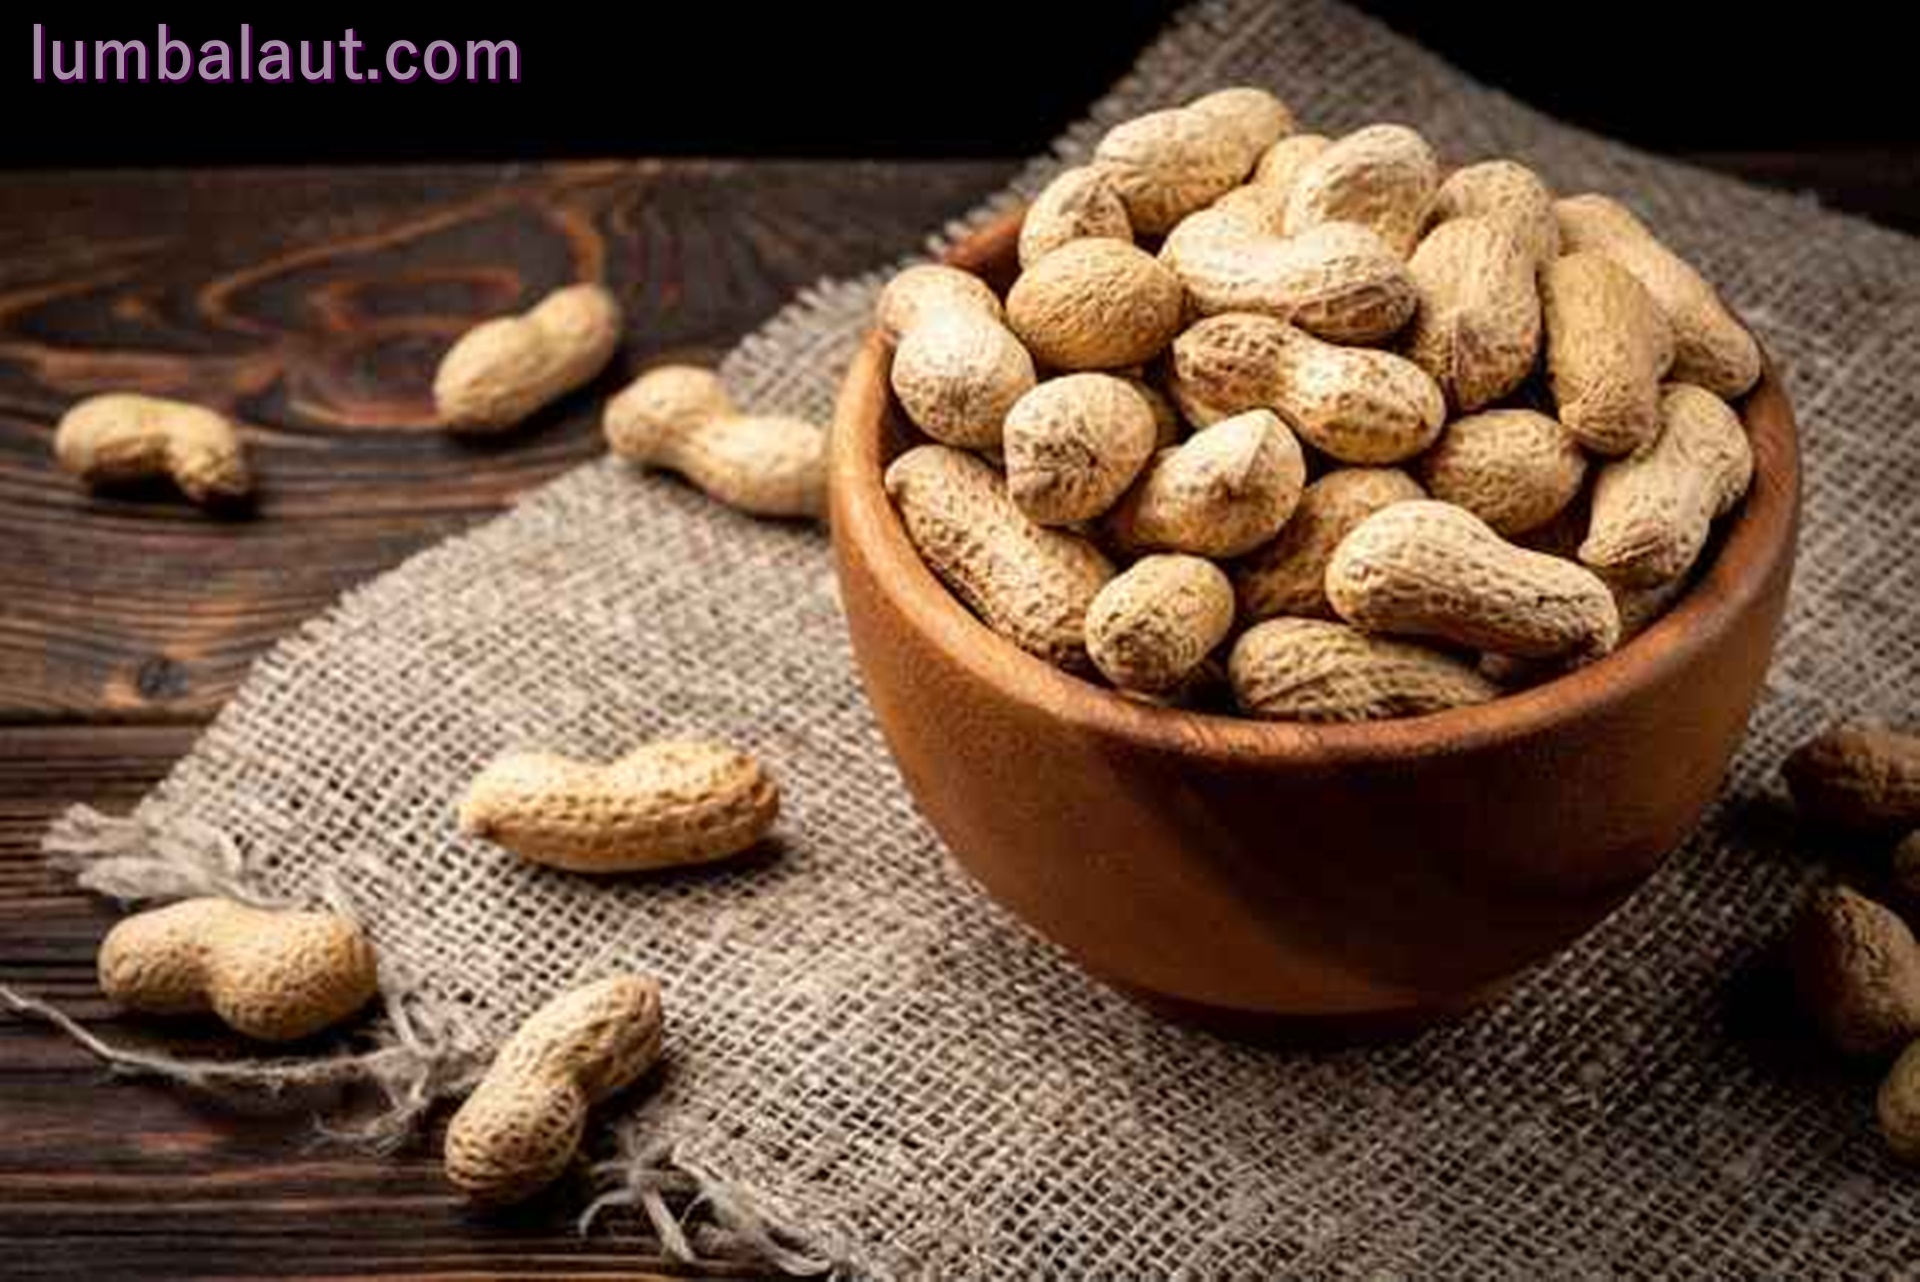 Manfaat Kacang Tanah untuk Kesehatan yang Jarang Di ketahui